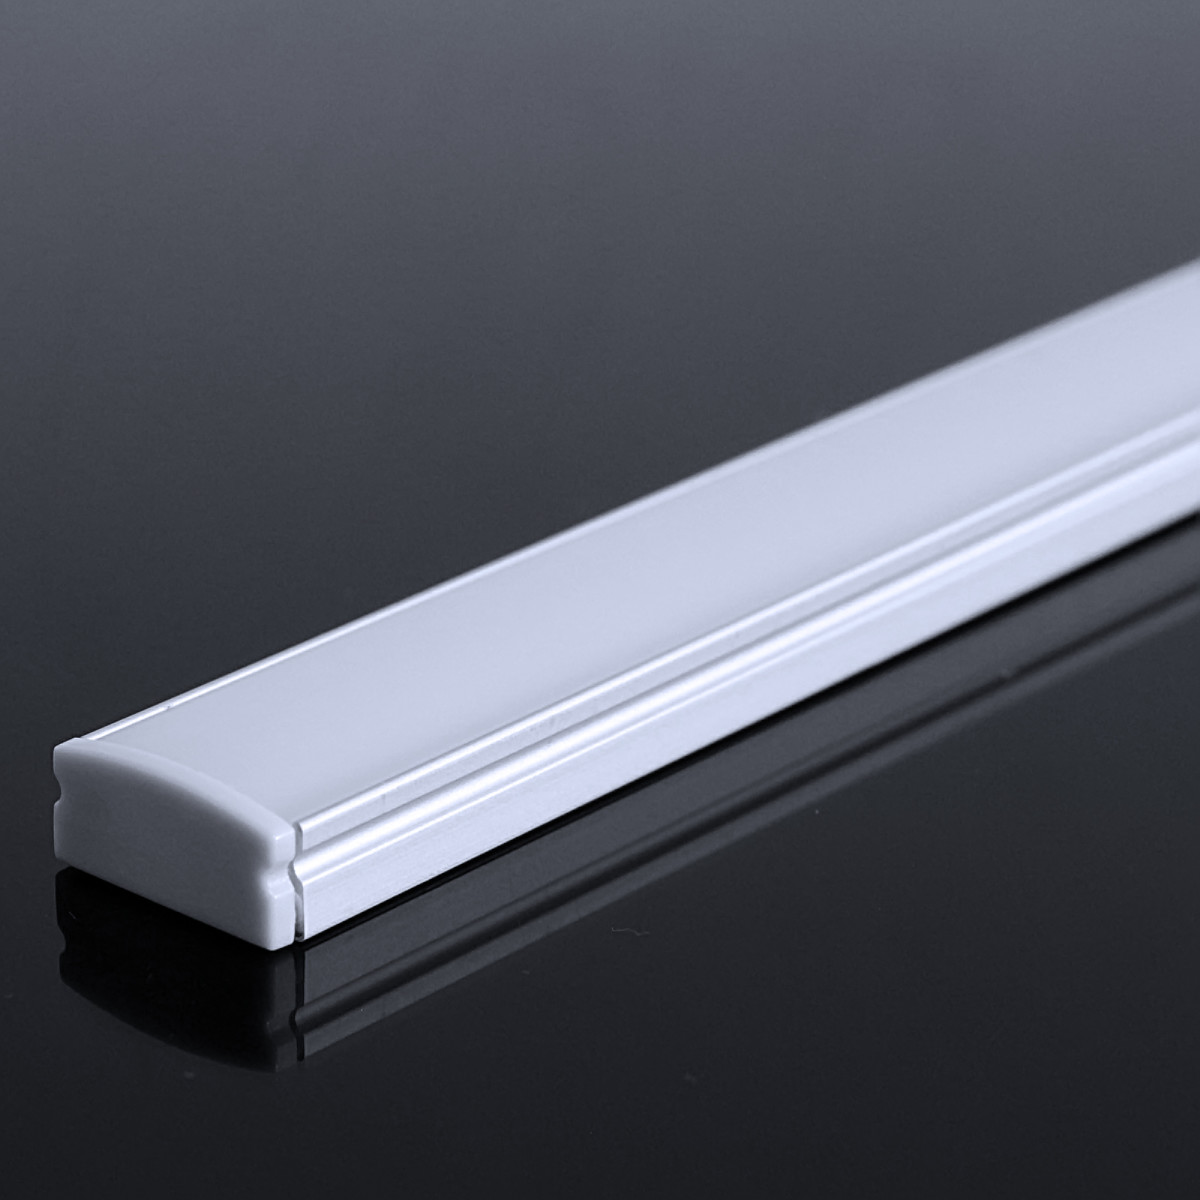 LED Flachprofil "Slim-Line" | Abdeckung diffus | Zuschnitt auf 46cm |